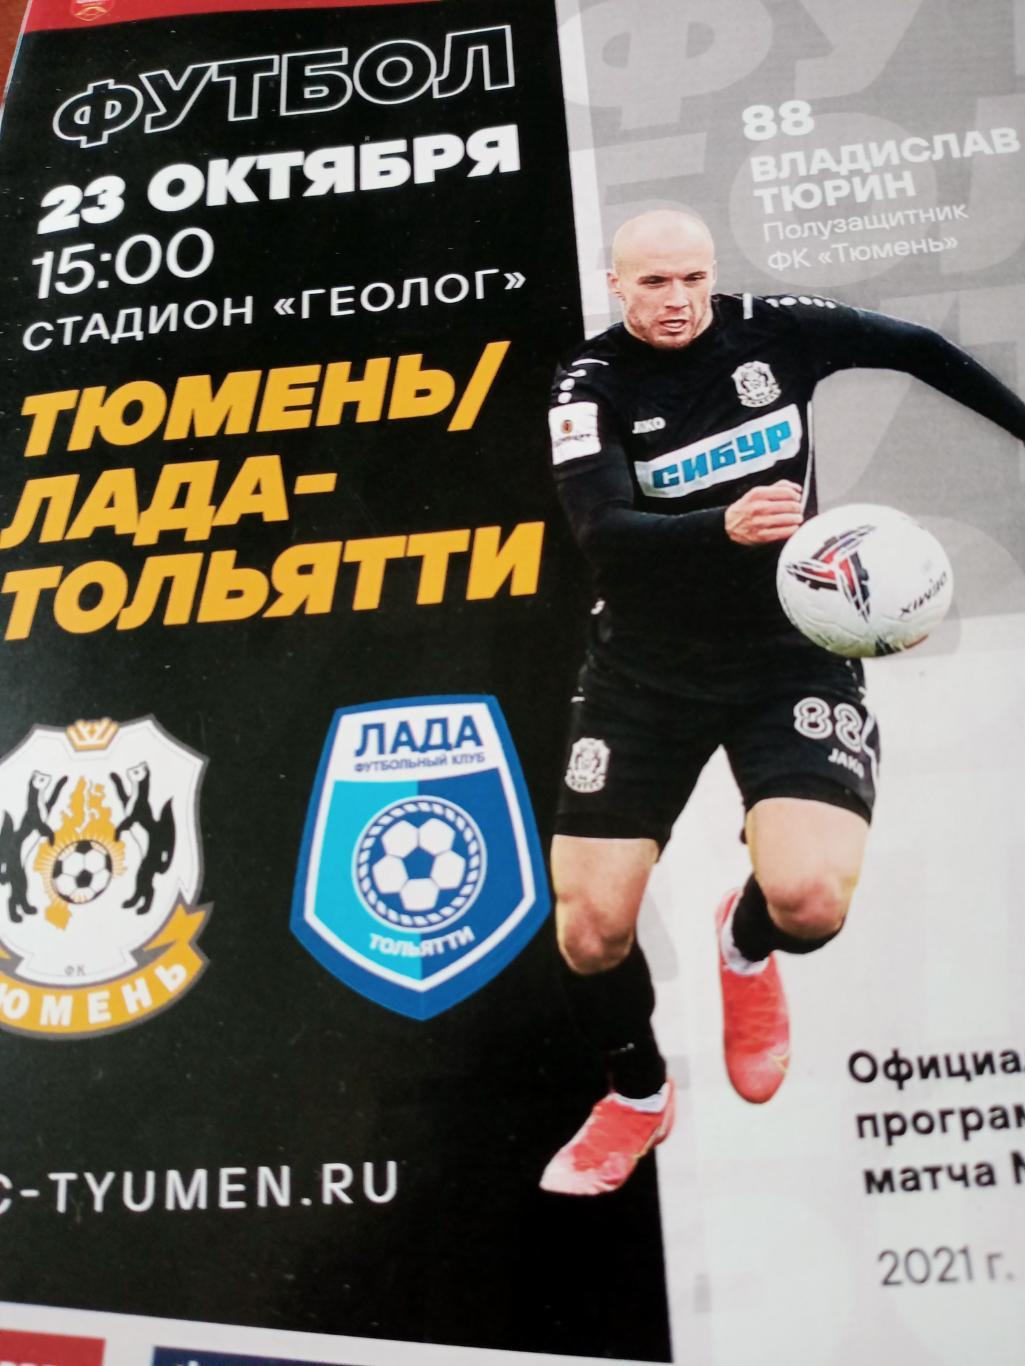 ФК Тюмень - Лада Тольятти. 23 октября 2021 год